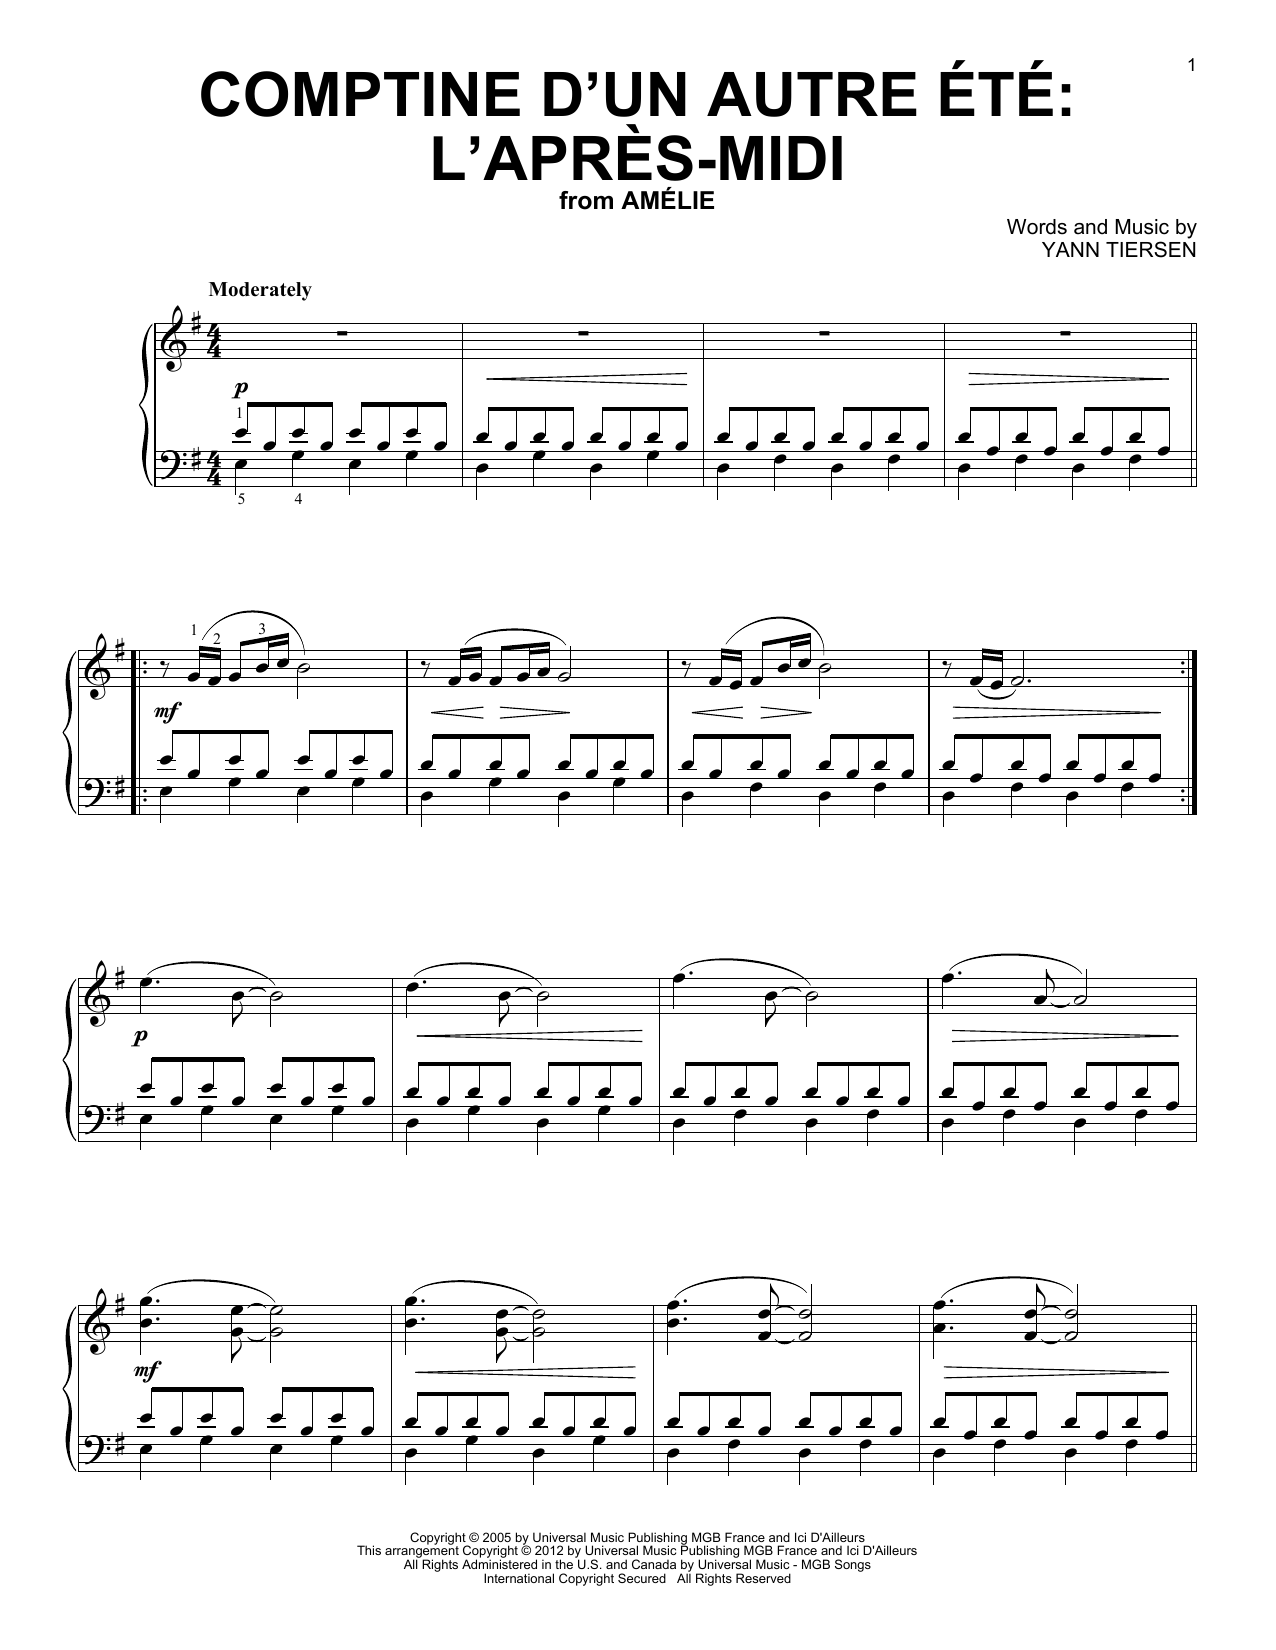 Yann Tiersen Comptine D'Un Autre Ete Sheet Music Notes & Chords for Piano Solo - Download or Print PDF